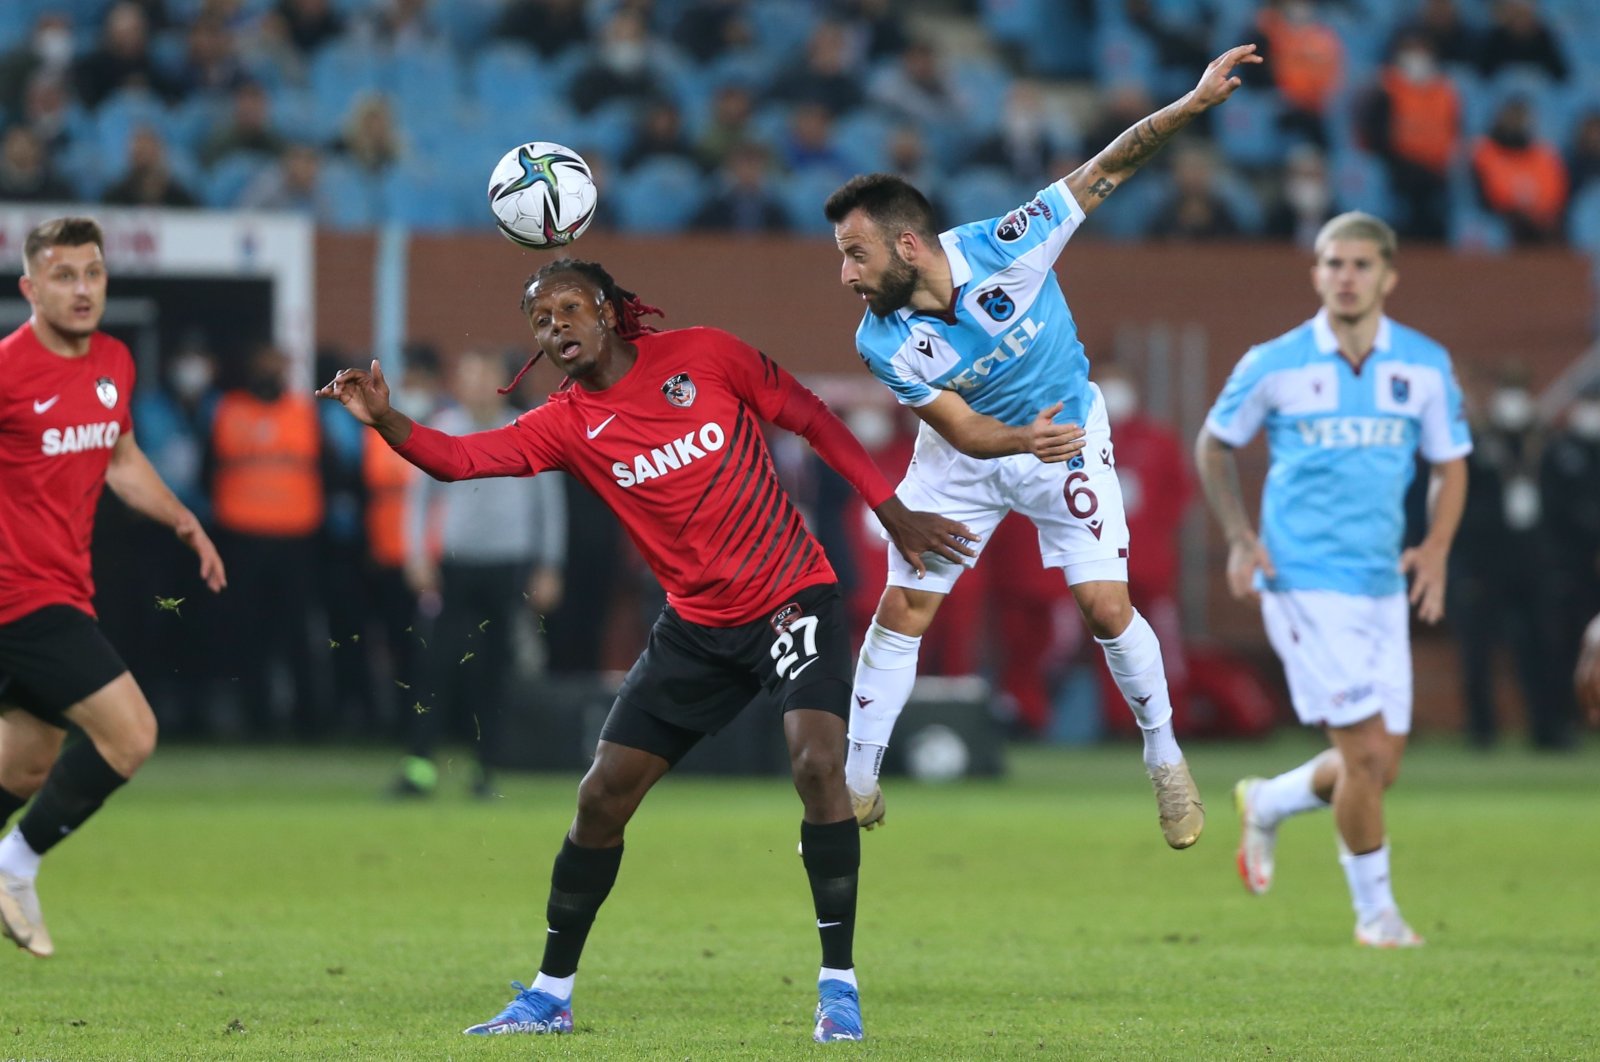 Pemimpin Trabzonspor mengalahkan Gaziantep FK 3-0 di kandang